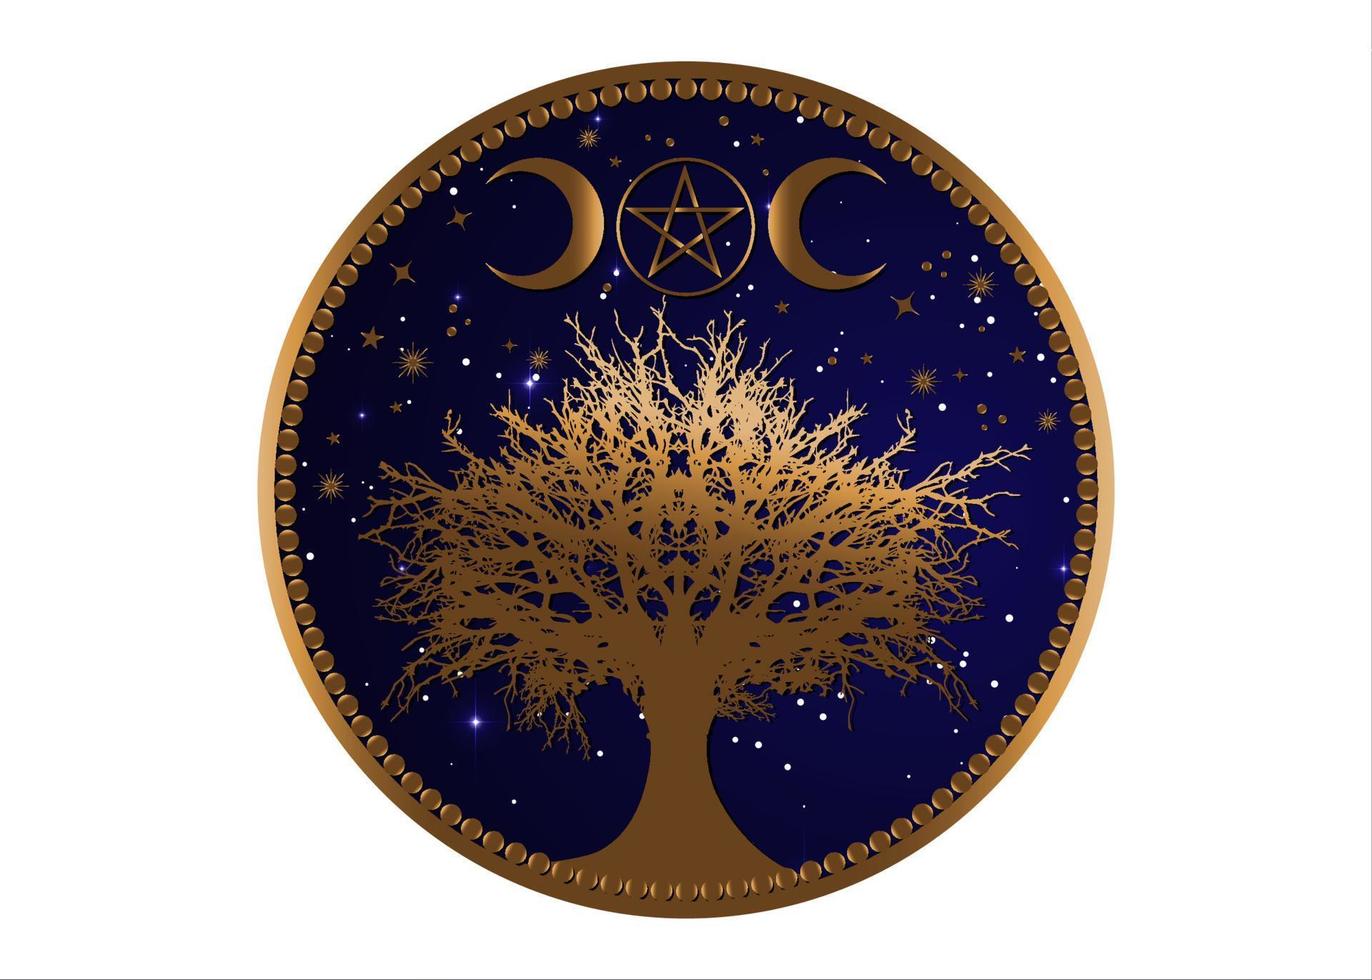 albero della vita wicca segno mandala, oro mistico luna pentacolo, geometria sacra, luna crescente d'oro, mezza luna pagana wiccan tripla dea simbolo, vettore isolato su sfondo blu cielo stellato